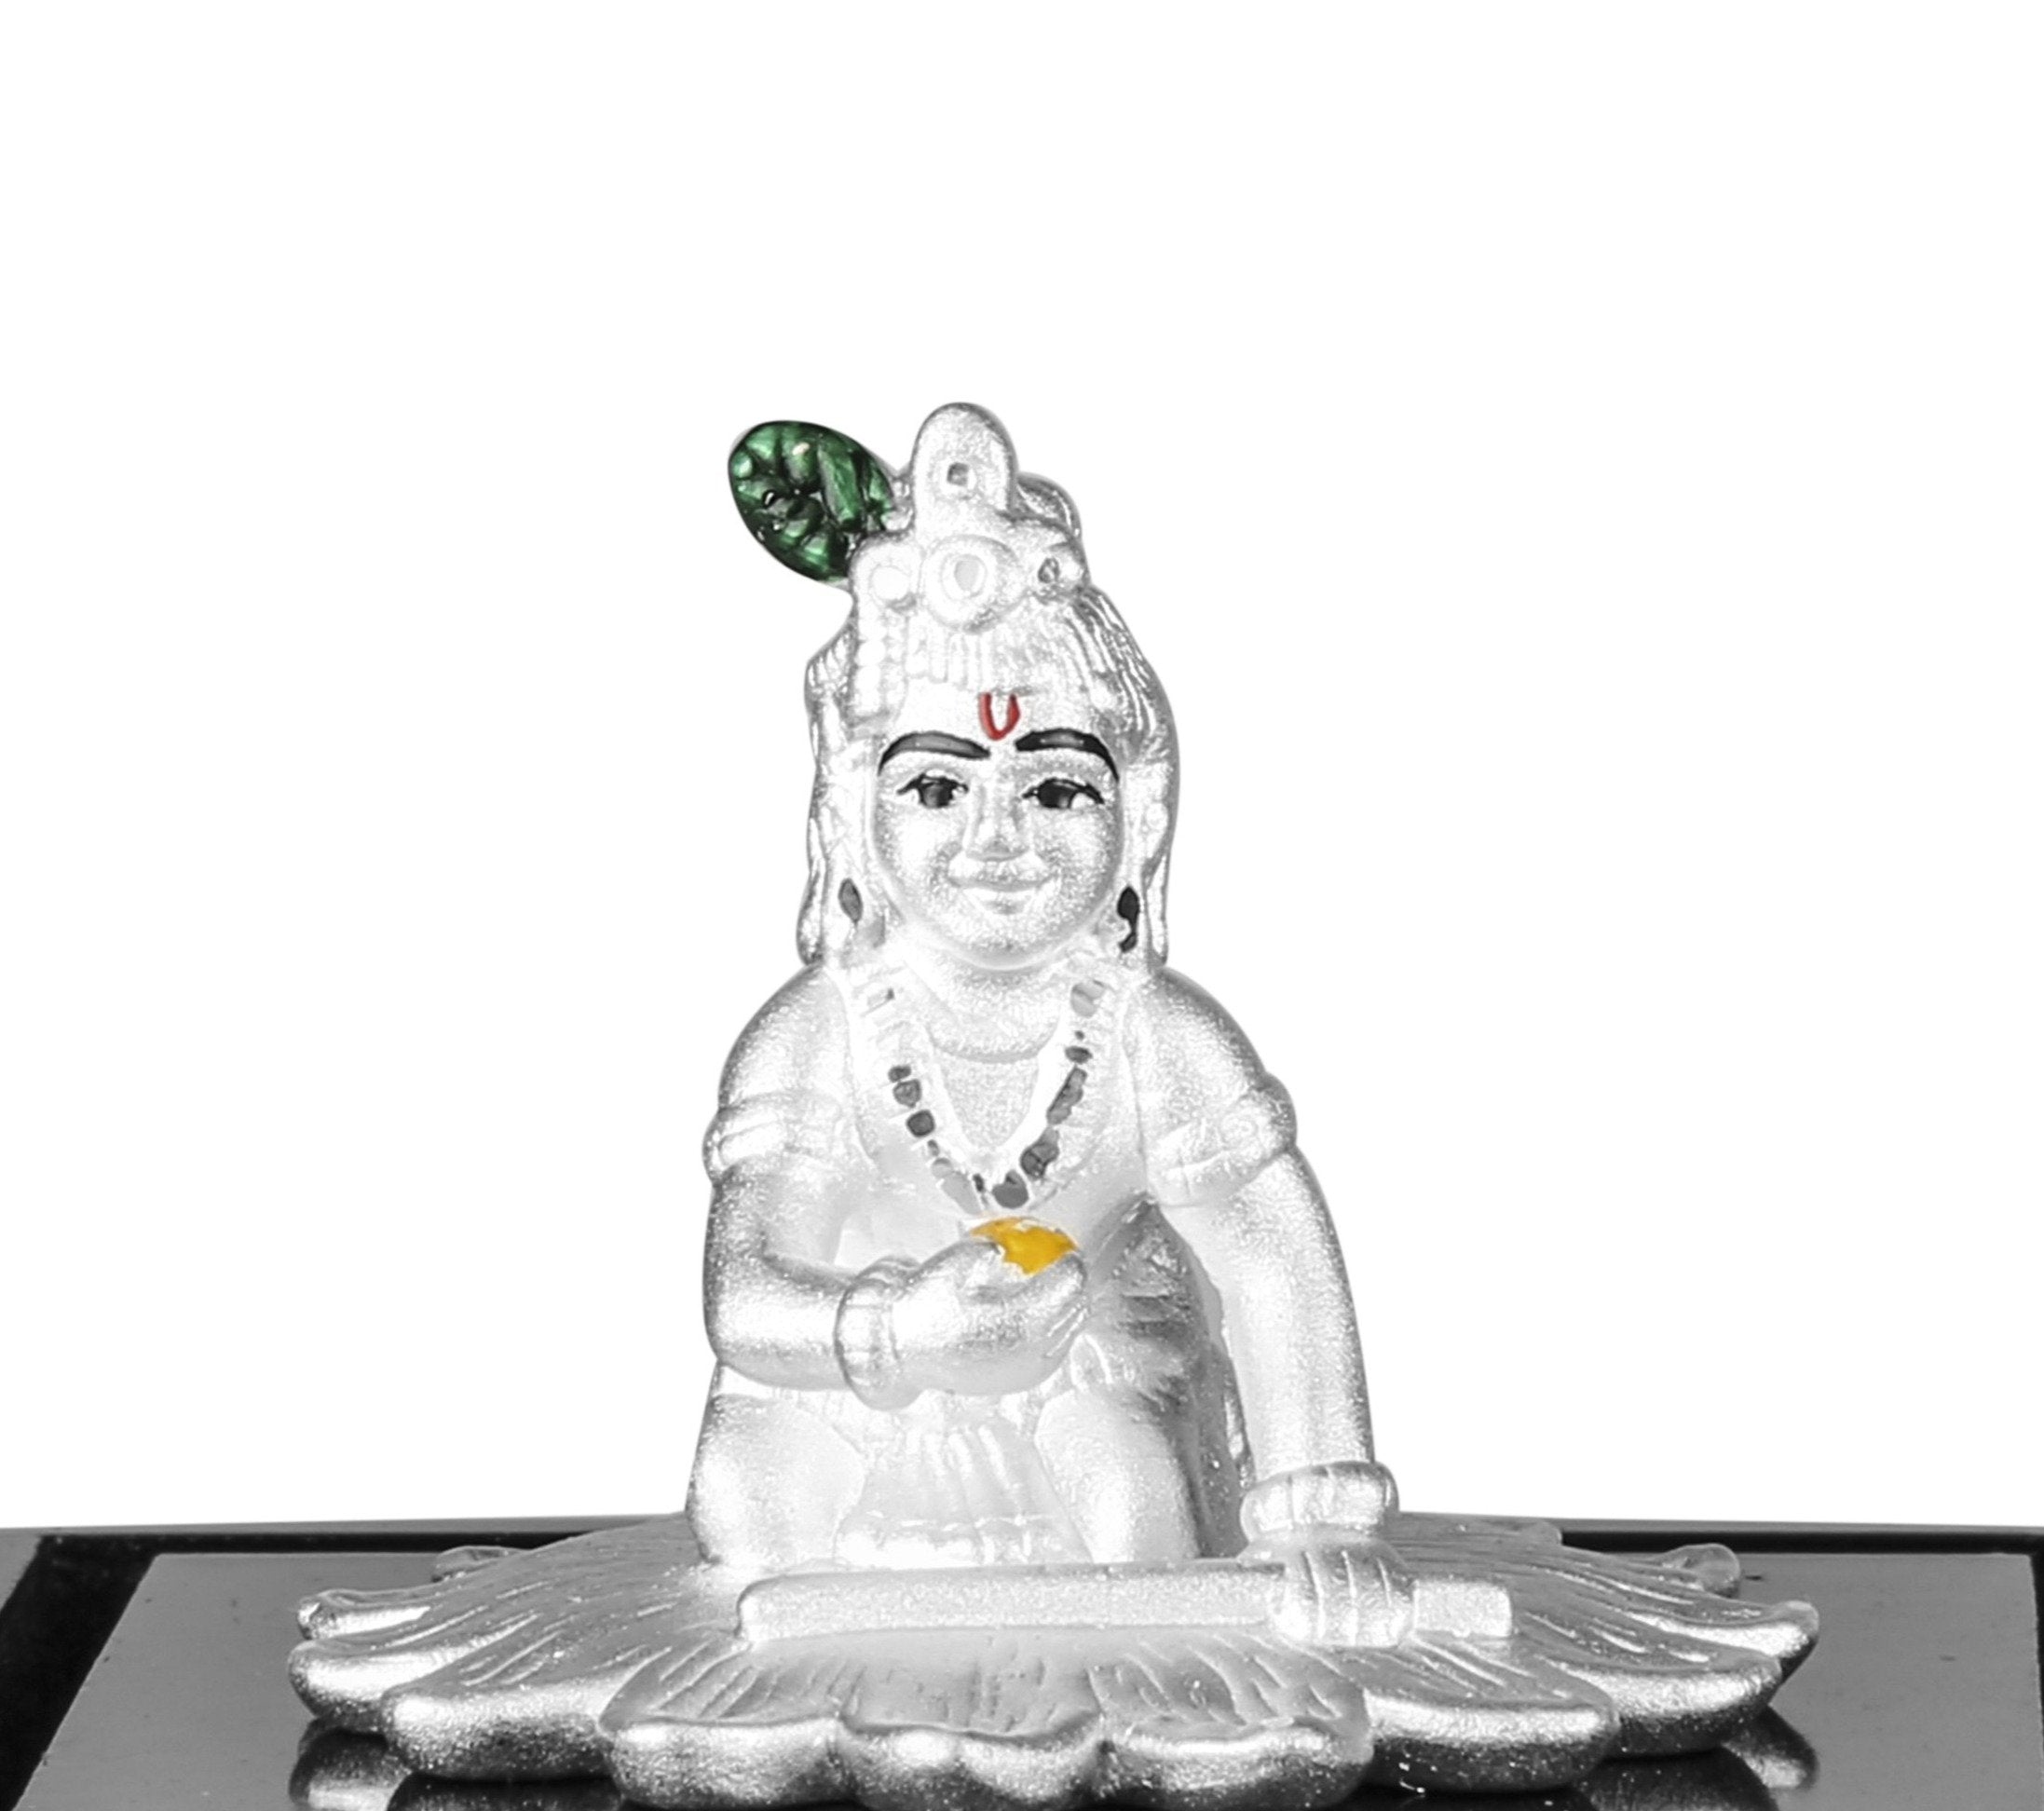 999 Pure Silver Bal Krishna Idol By Krysaliis Isvara-Kribk_03 Idols